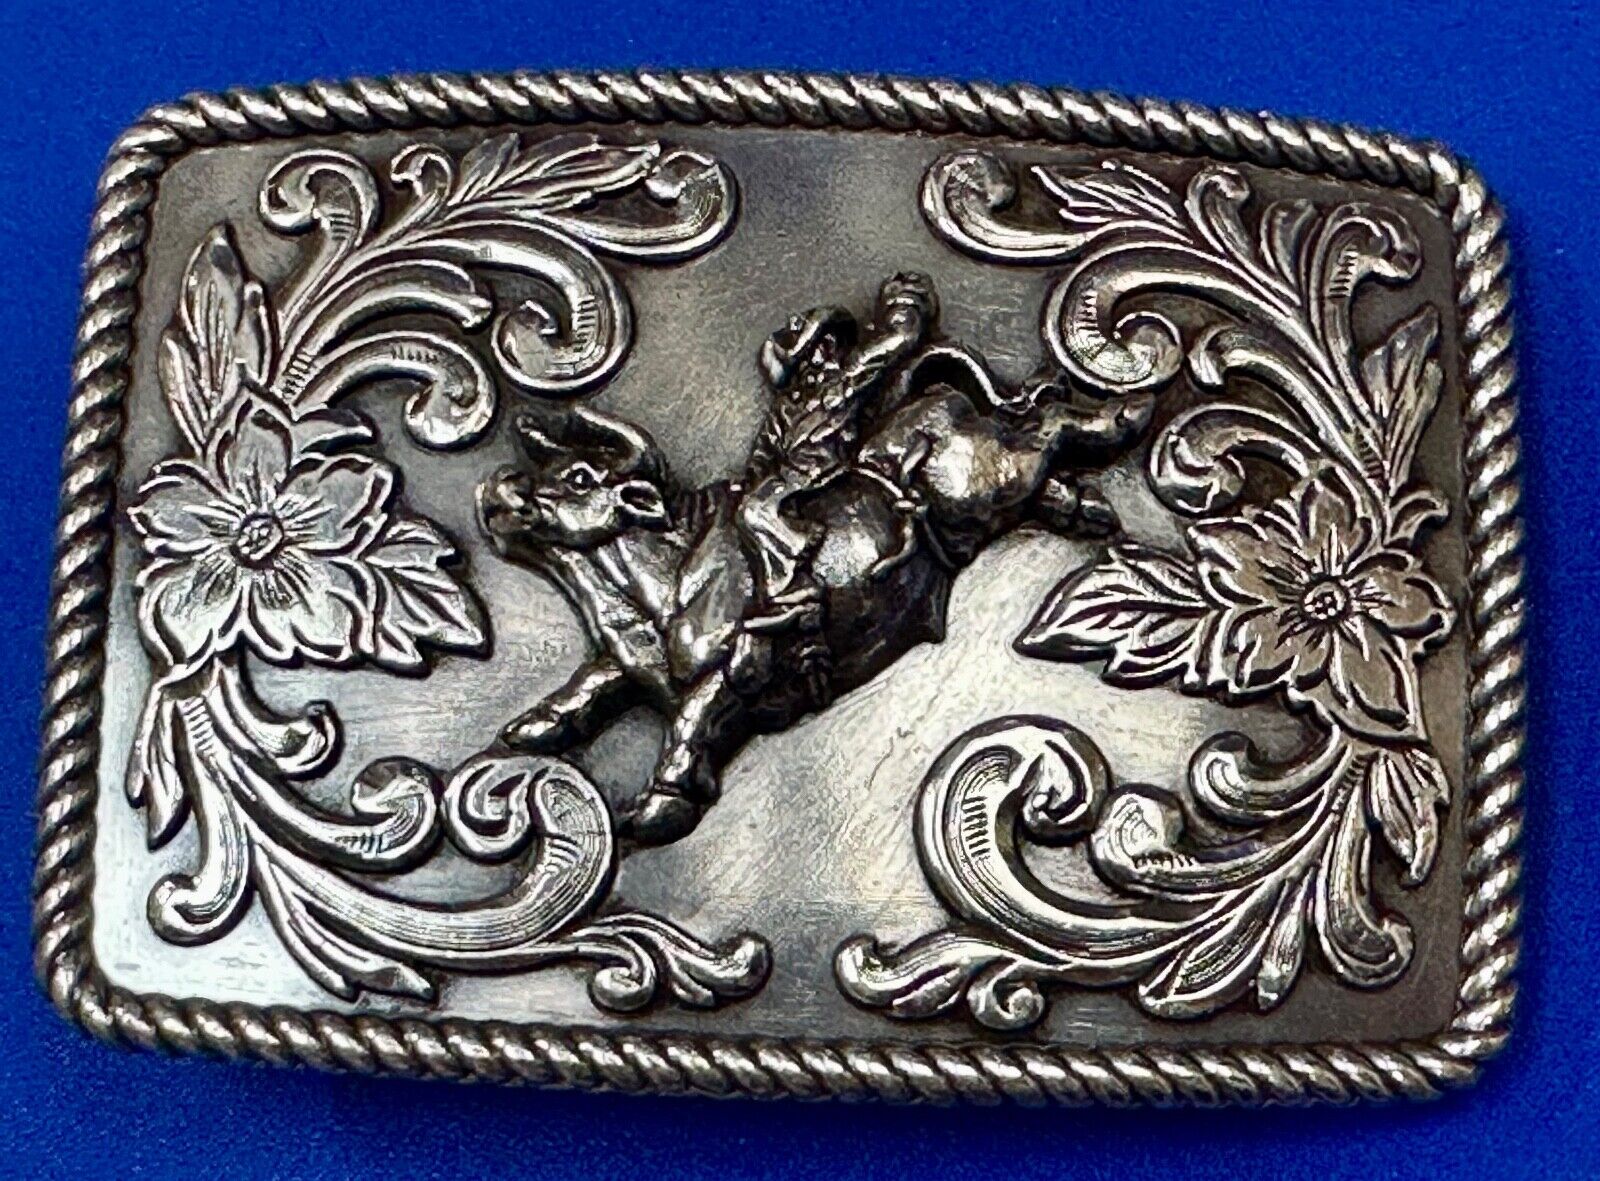 DBL Barrel Cowboy Saddle Bronc western metal belt buckle